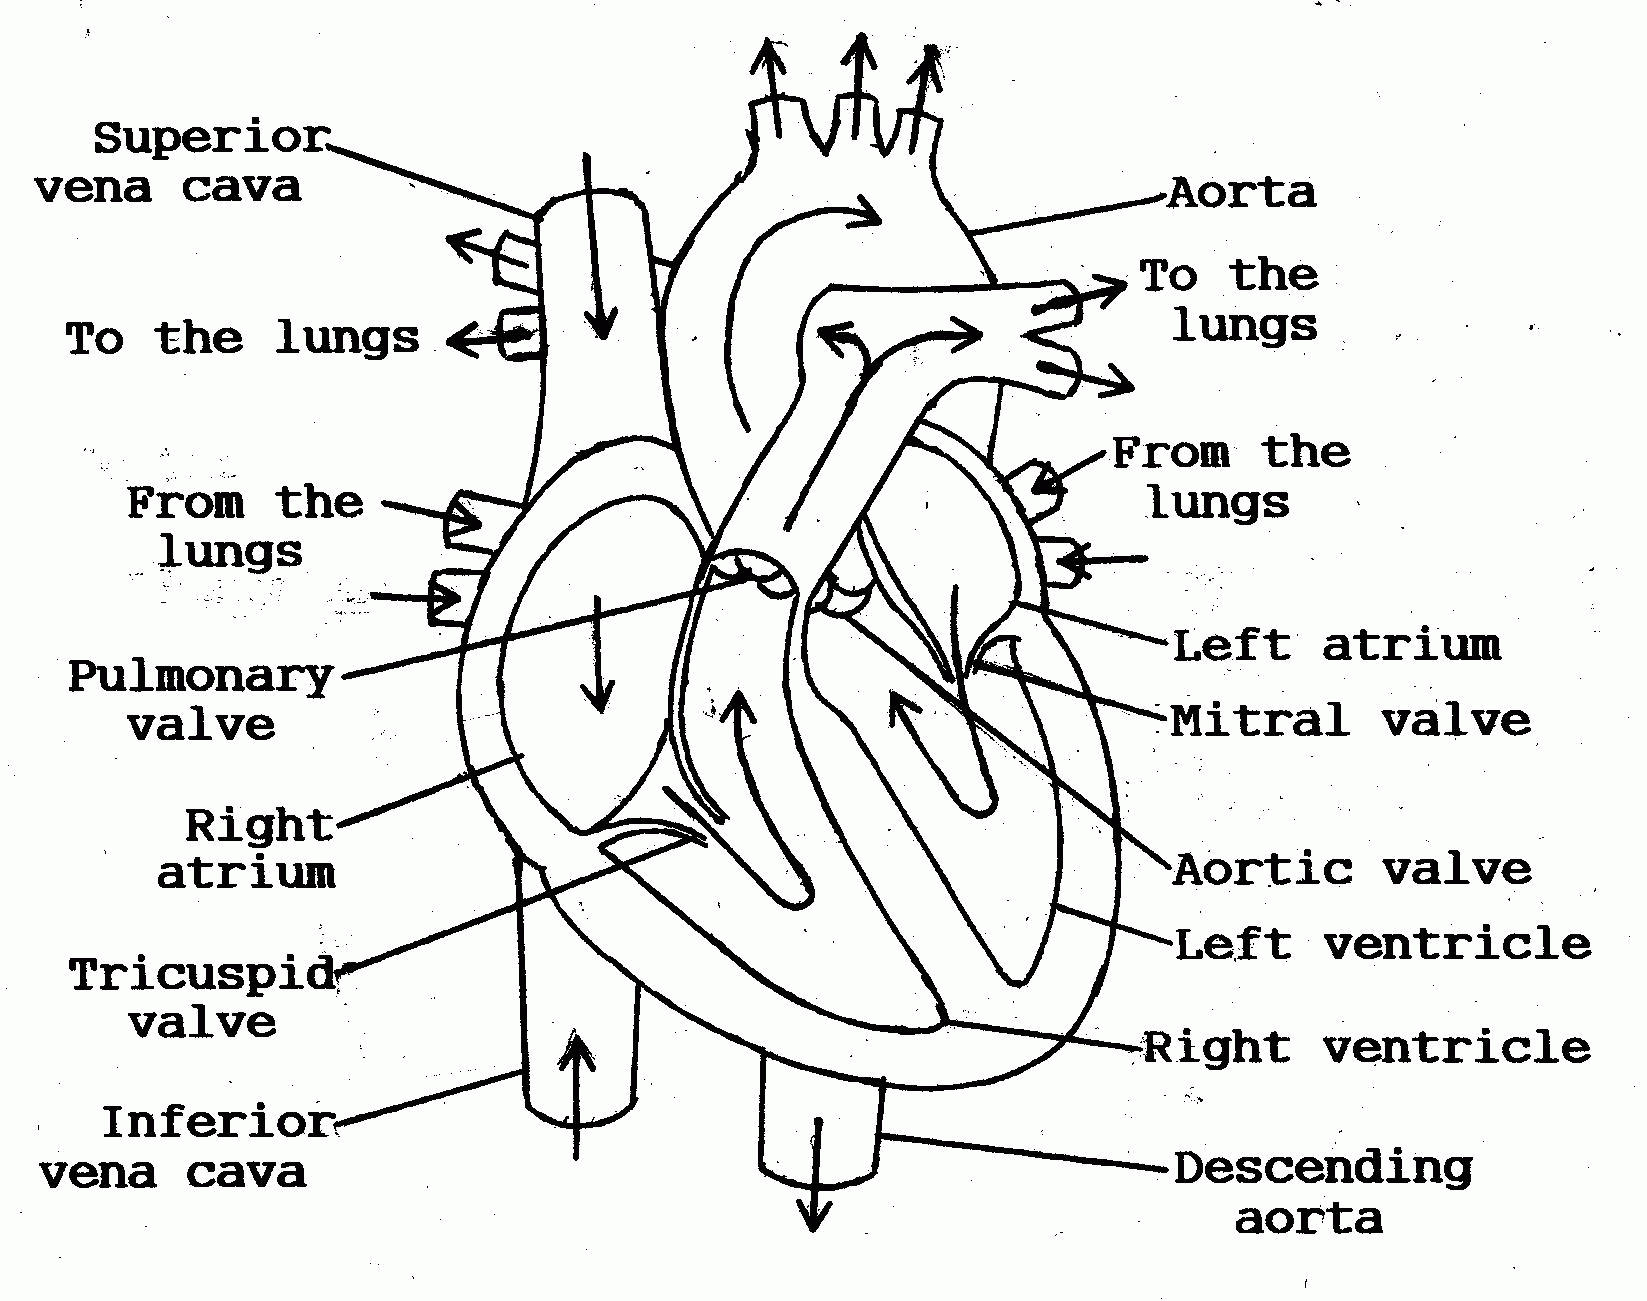 Heart Blood Flow Chart